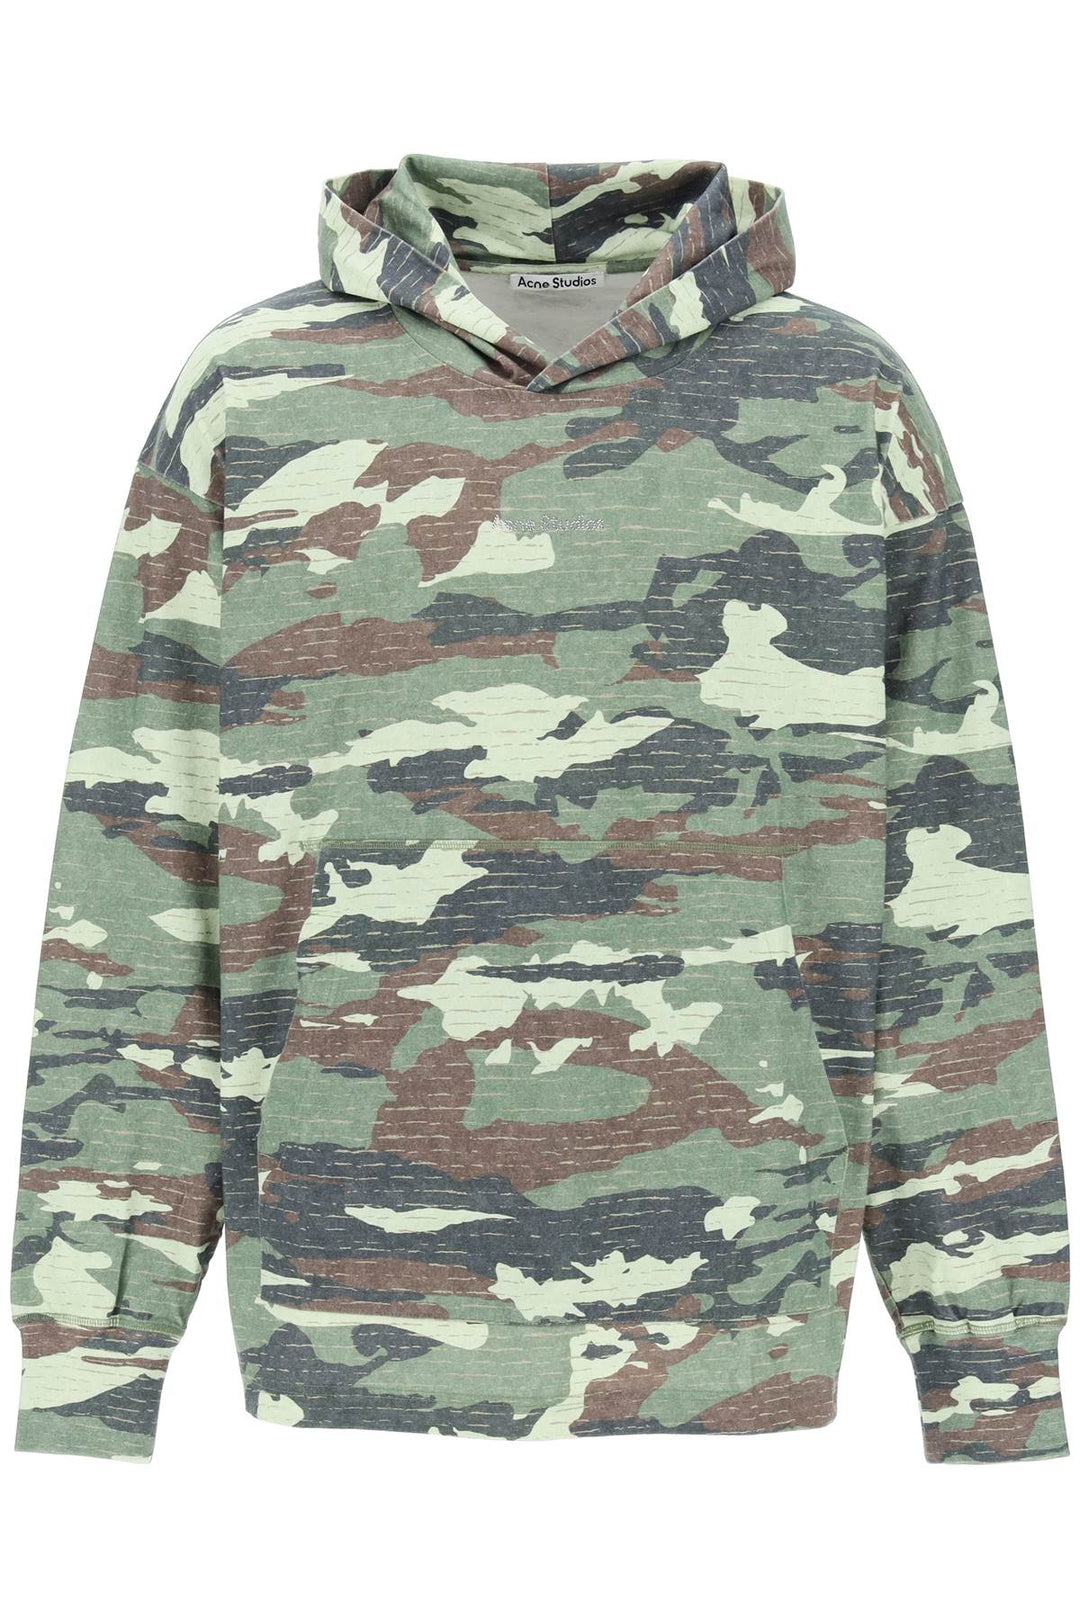 Acne Studios Camouflage Hoodie Sweatshirt With   Verde